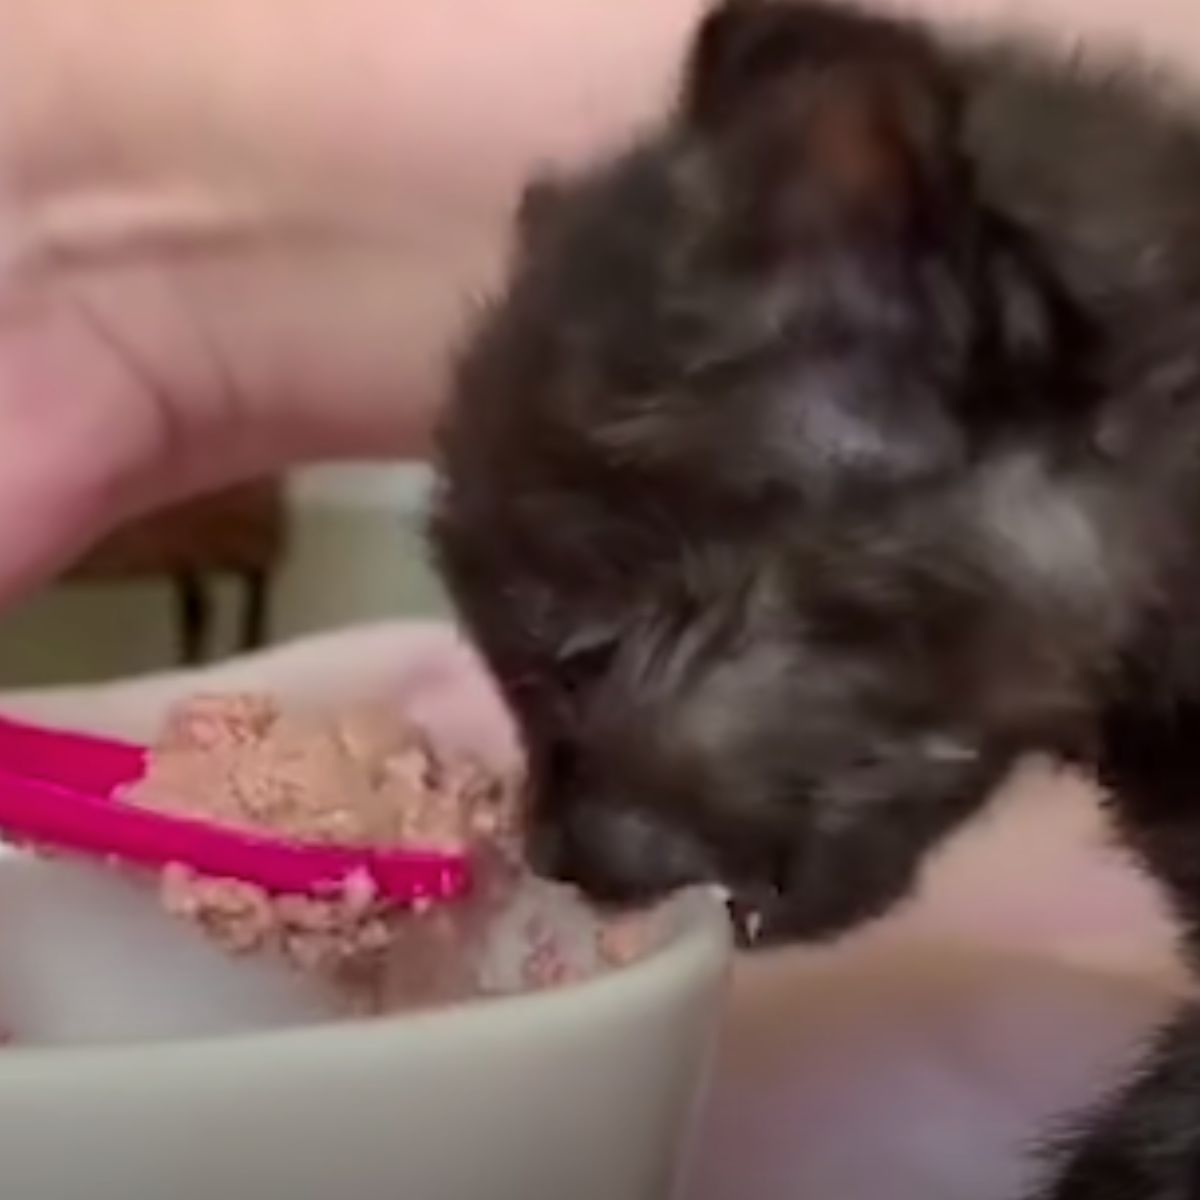 tiny kitten eating